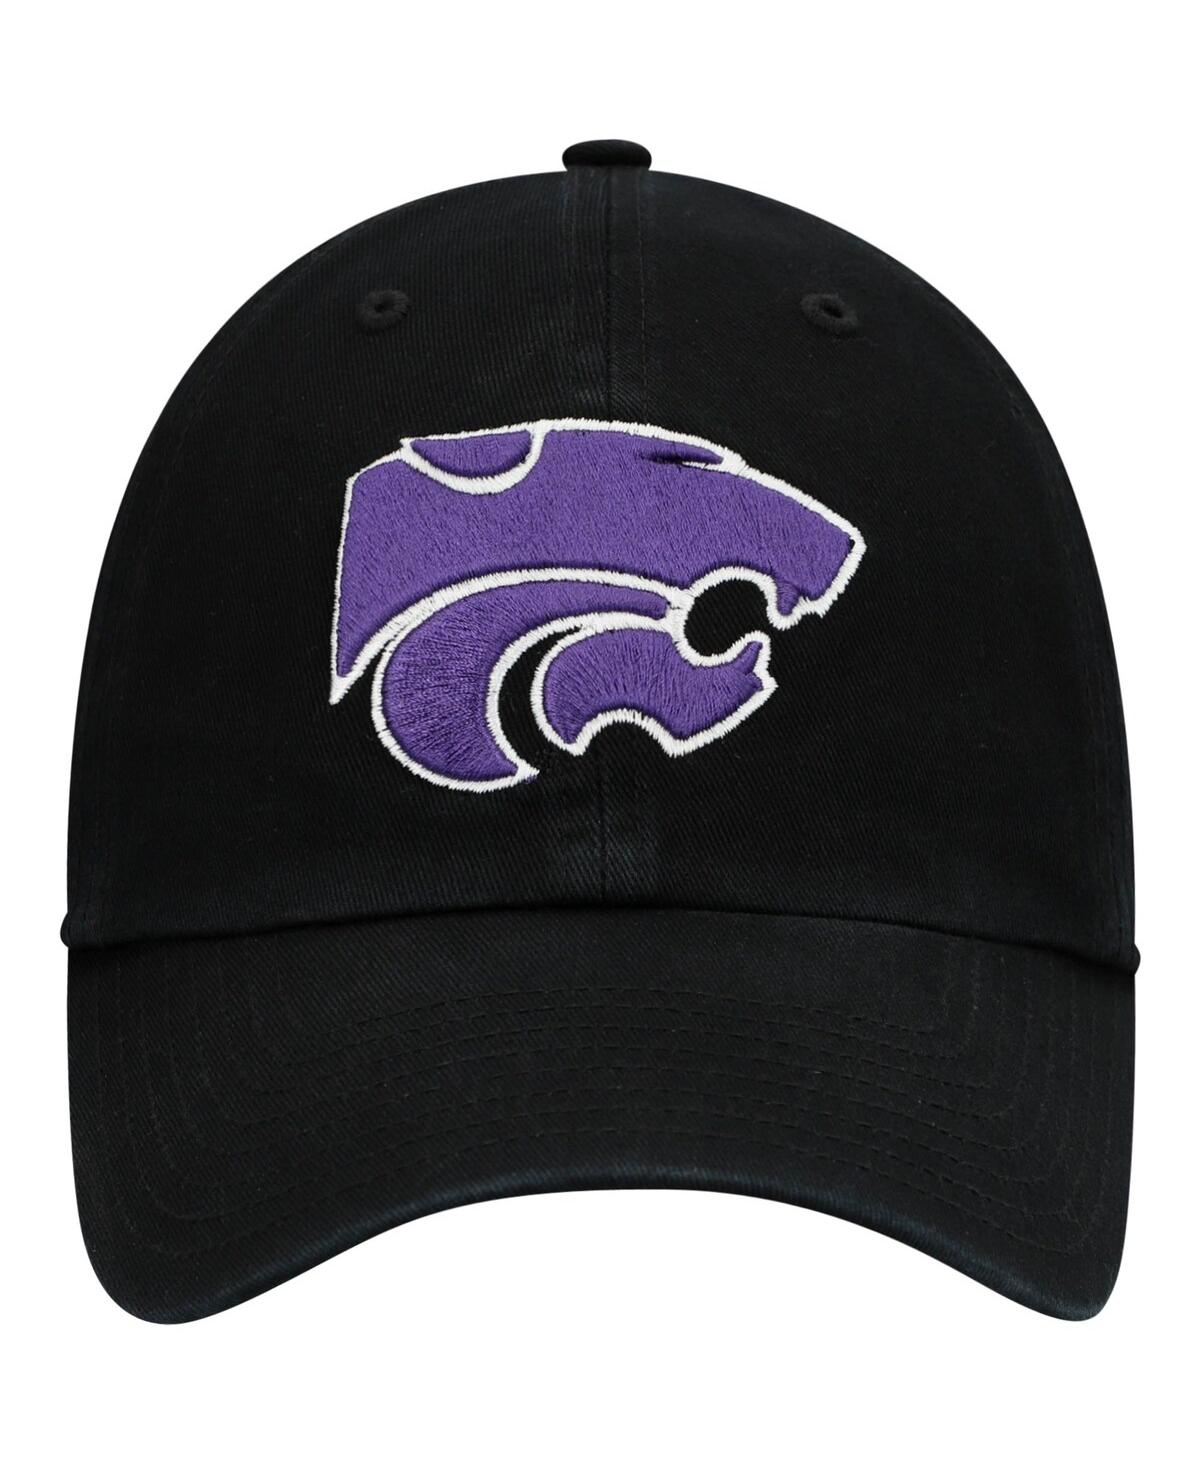 Shop 47 Brand Men's ' Black Kansas State Wildcats Vintage-like Clean Up Adjustable Hat